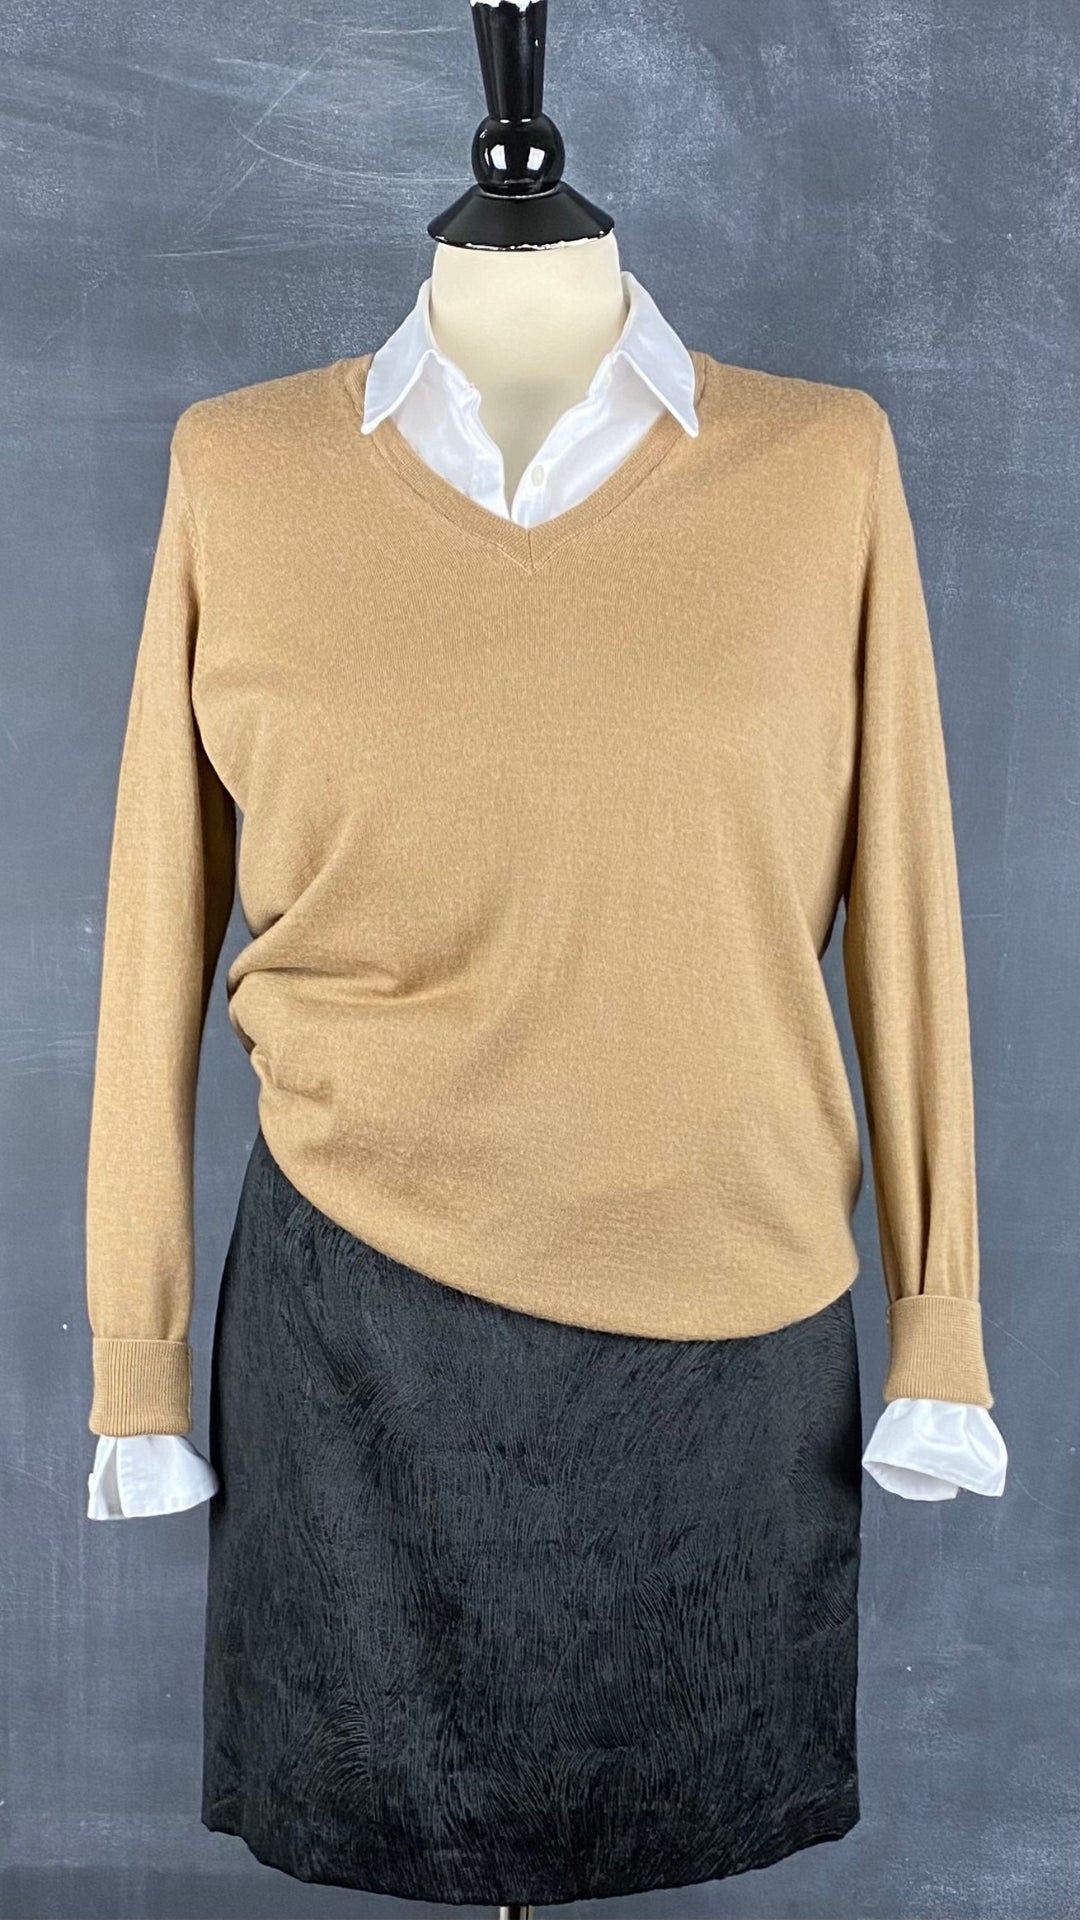 Jupe noire chic texturée Tristan, taille 6. Vue de l'agencement avec un chemisier blanc et un tricot à col en v Cos.